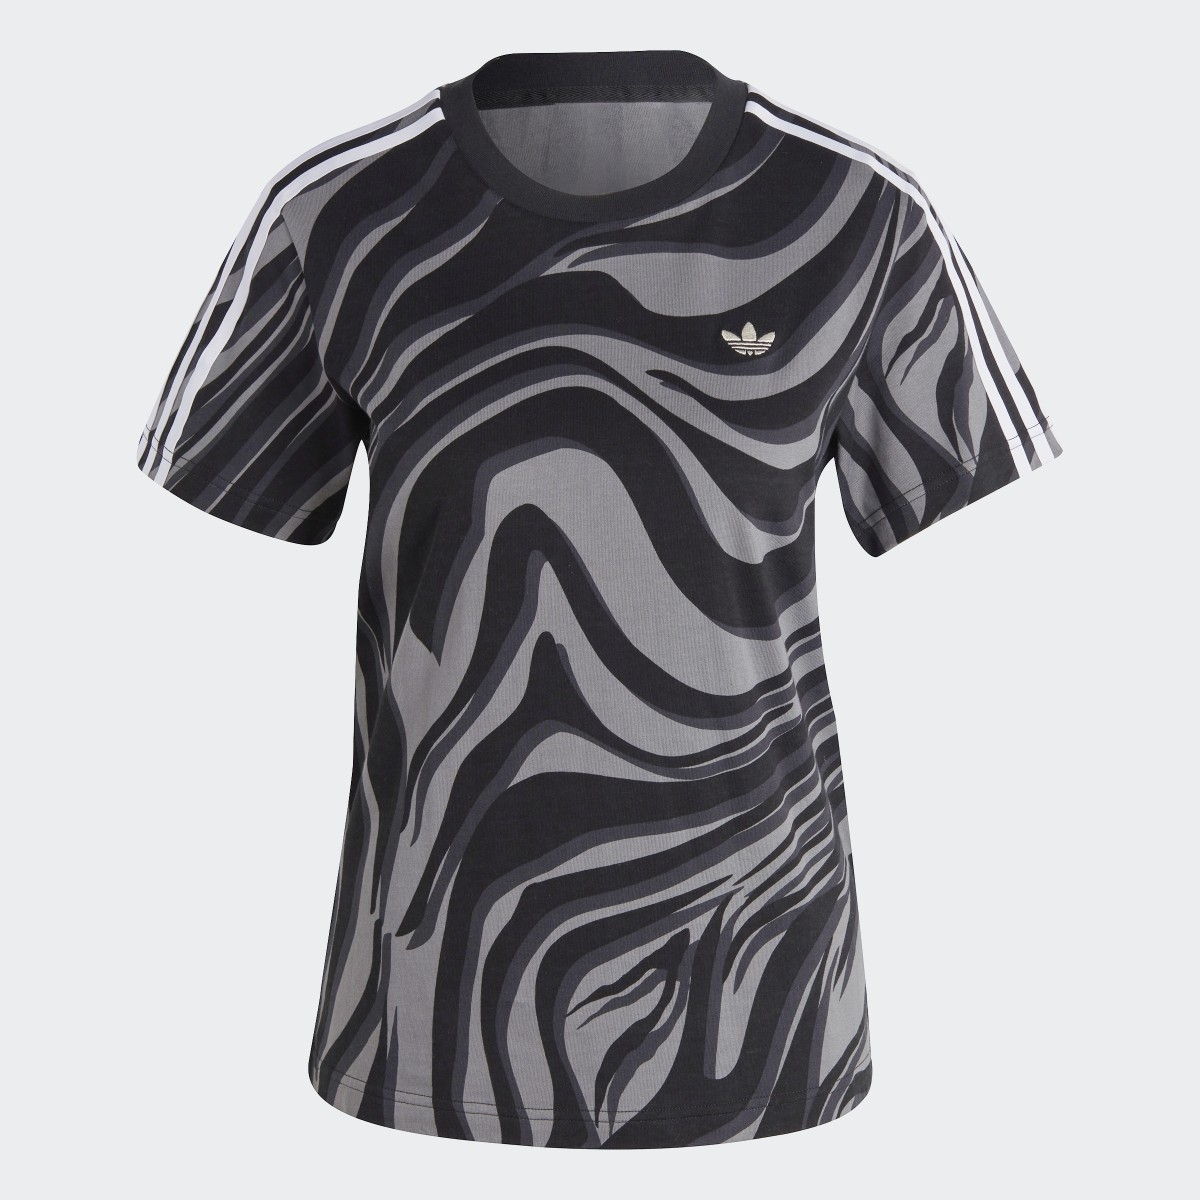 Adidas T-shirt à imprimé animal abstrait intégral. 5